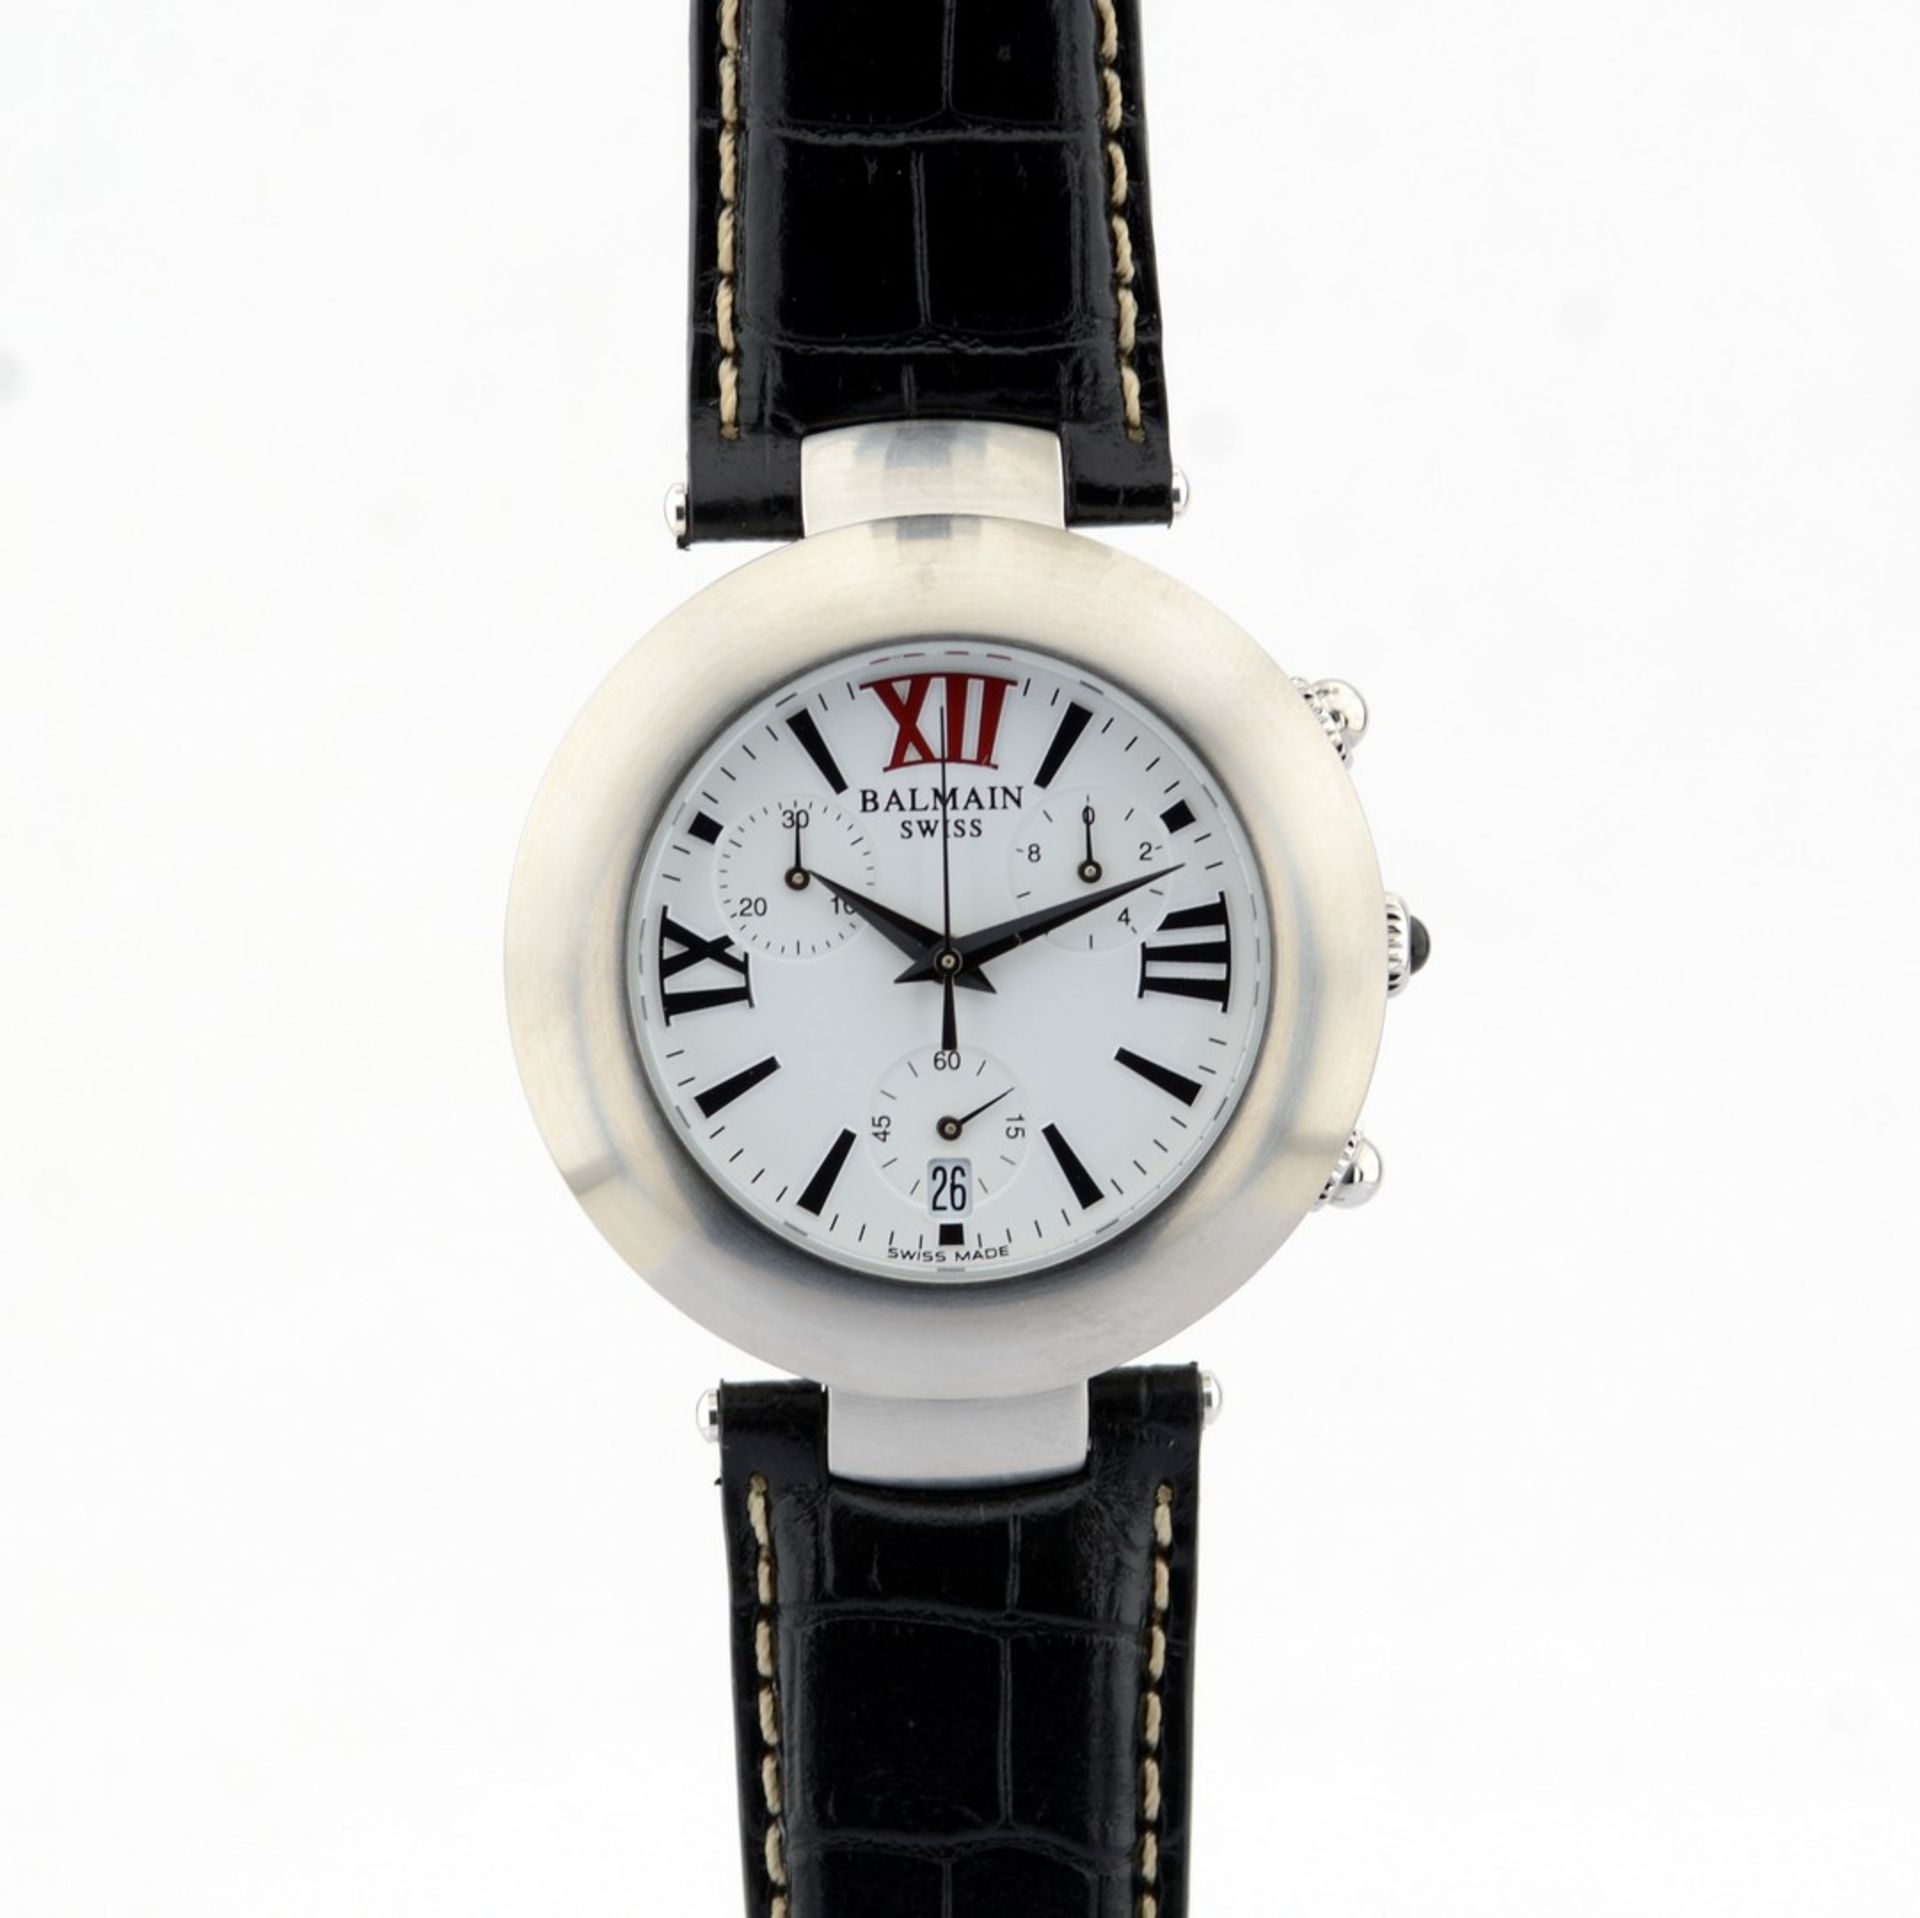 Pierre Balmain / Swiss Chronograph Date - Gentlmen's Steel Wrist Watch - Image 4 of 10